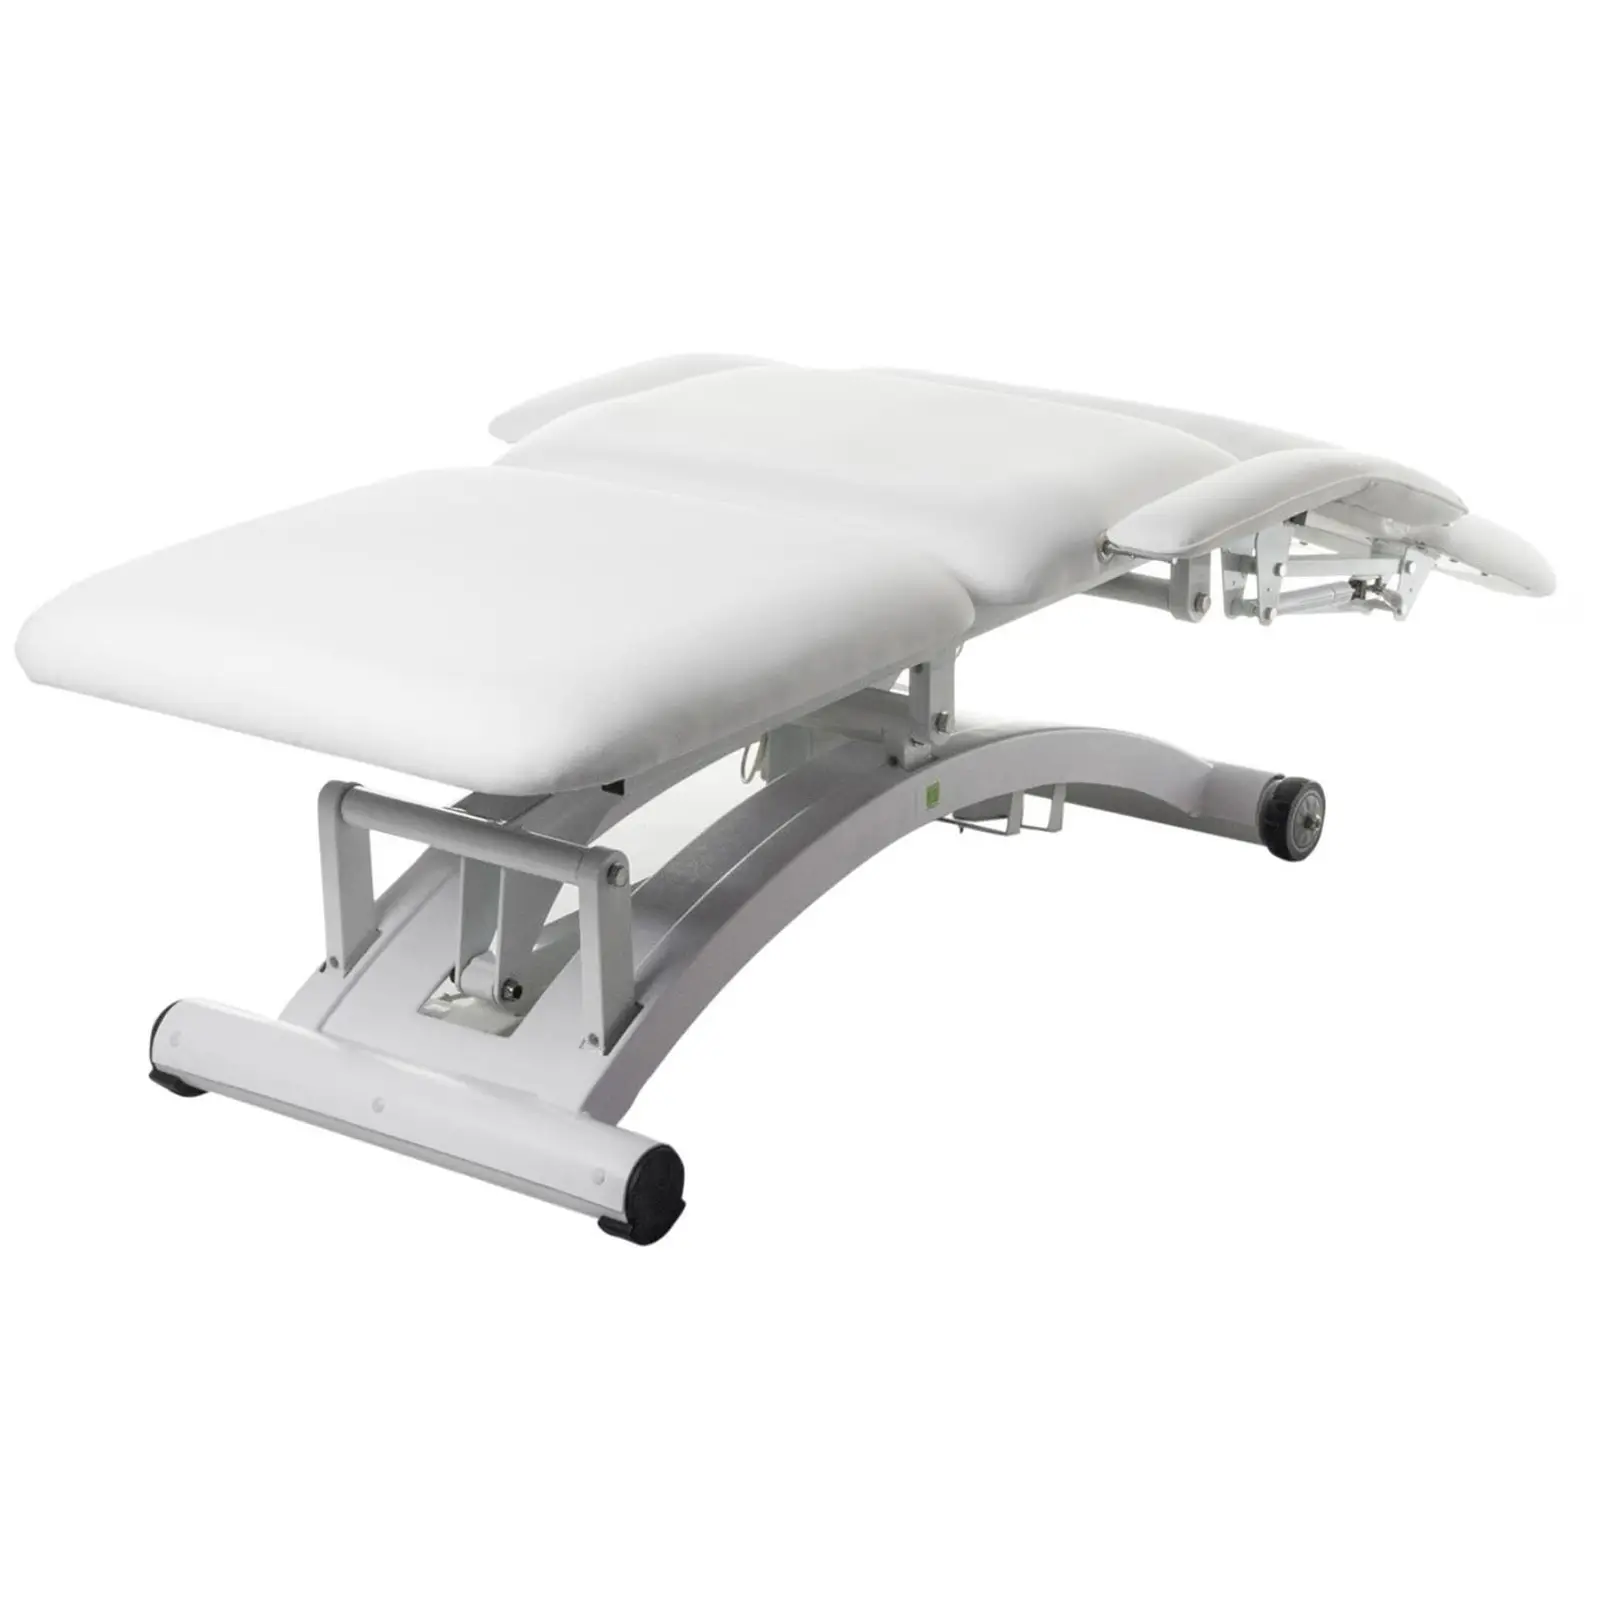 Table de massage électrique avec siège d’appui - 3 moteurs - Télécommande - Blanc